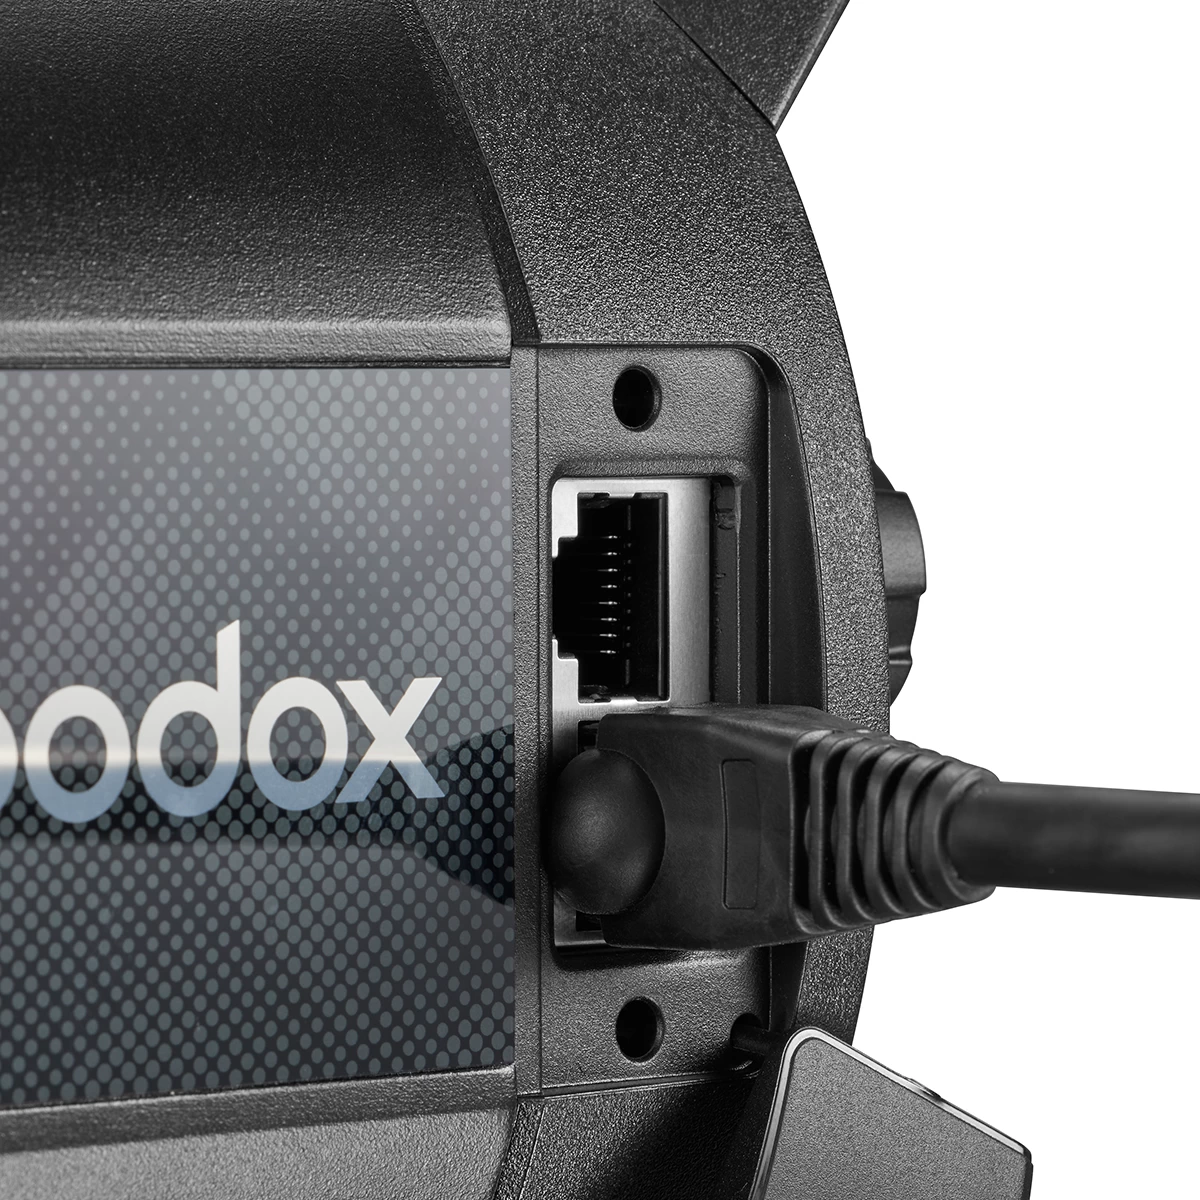 Осветитель GODOX SZ300R RGB Zoom